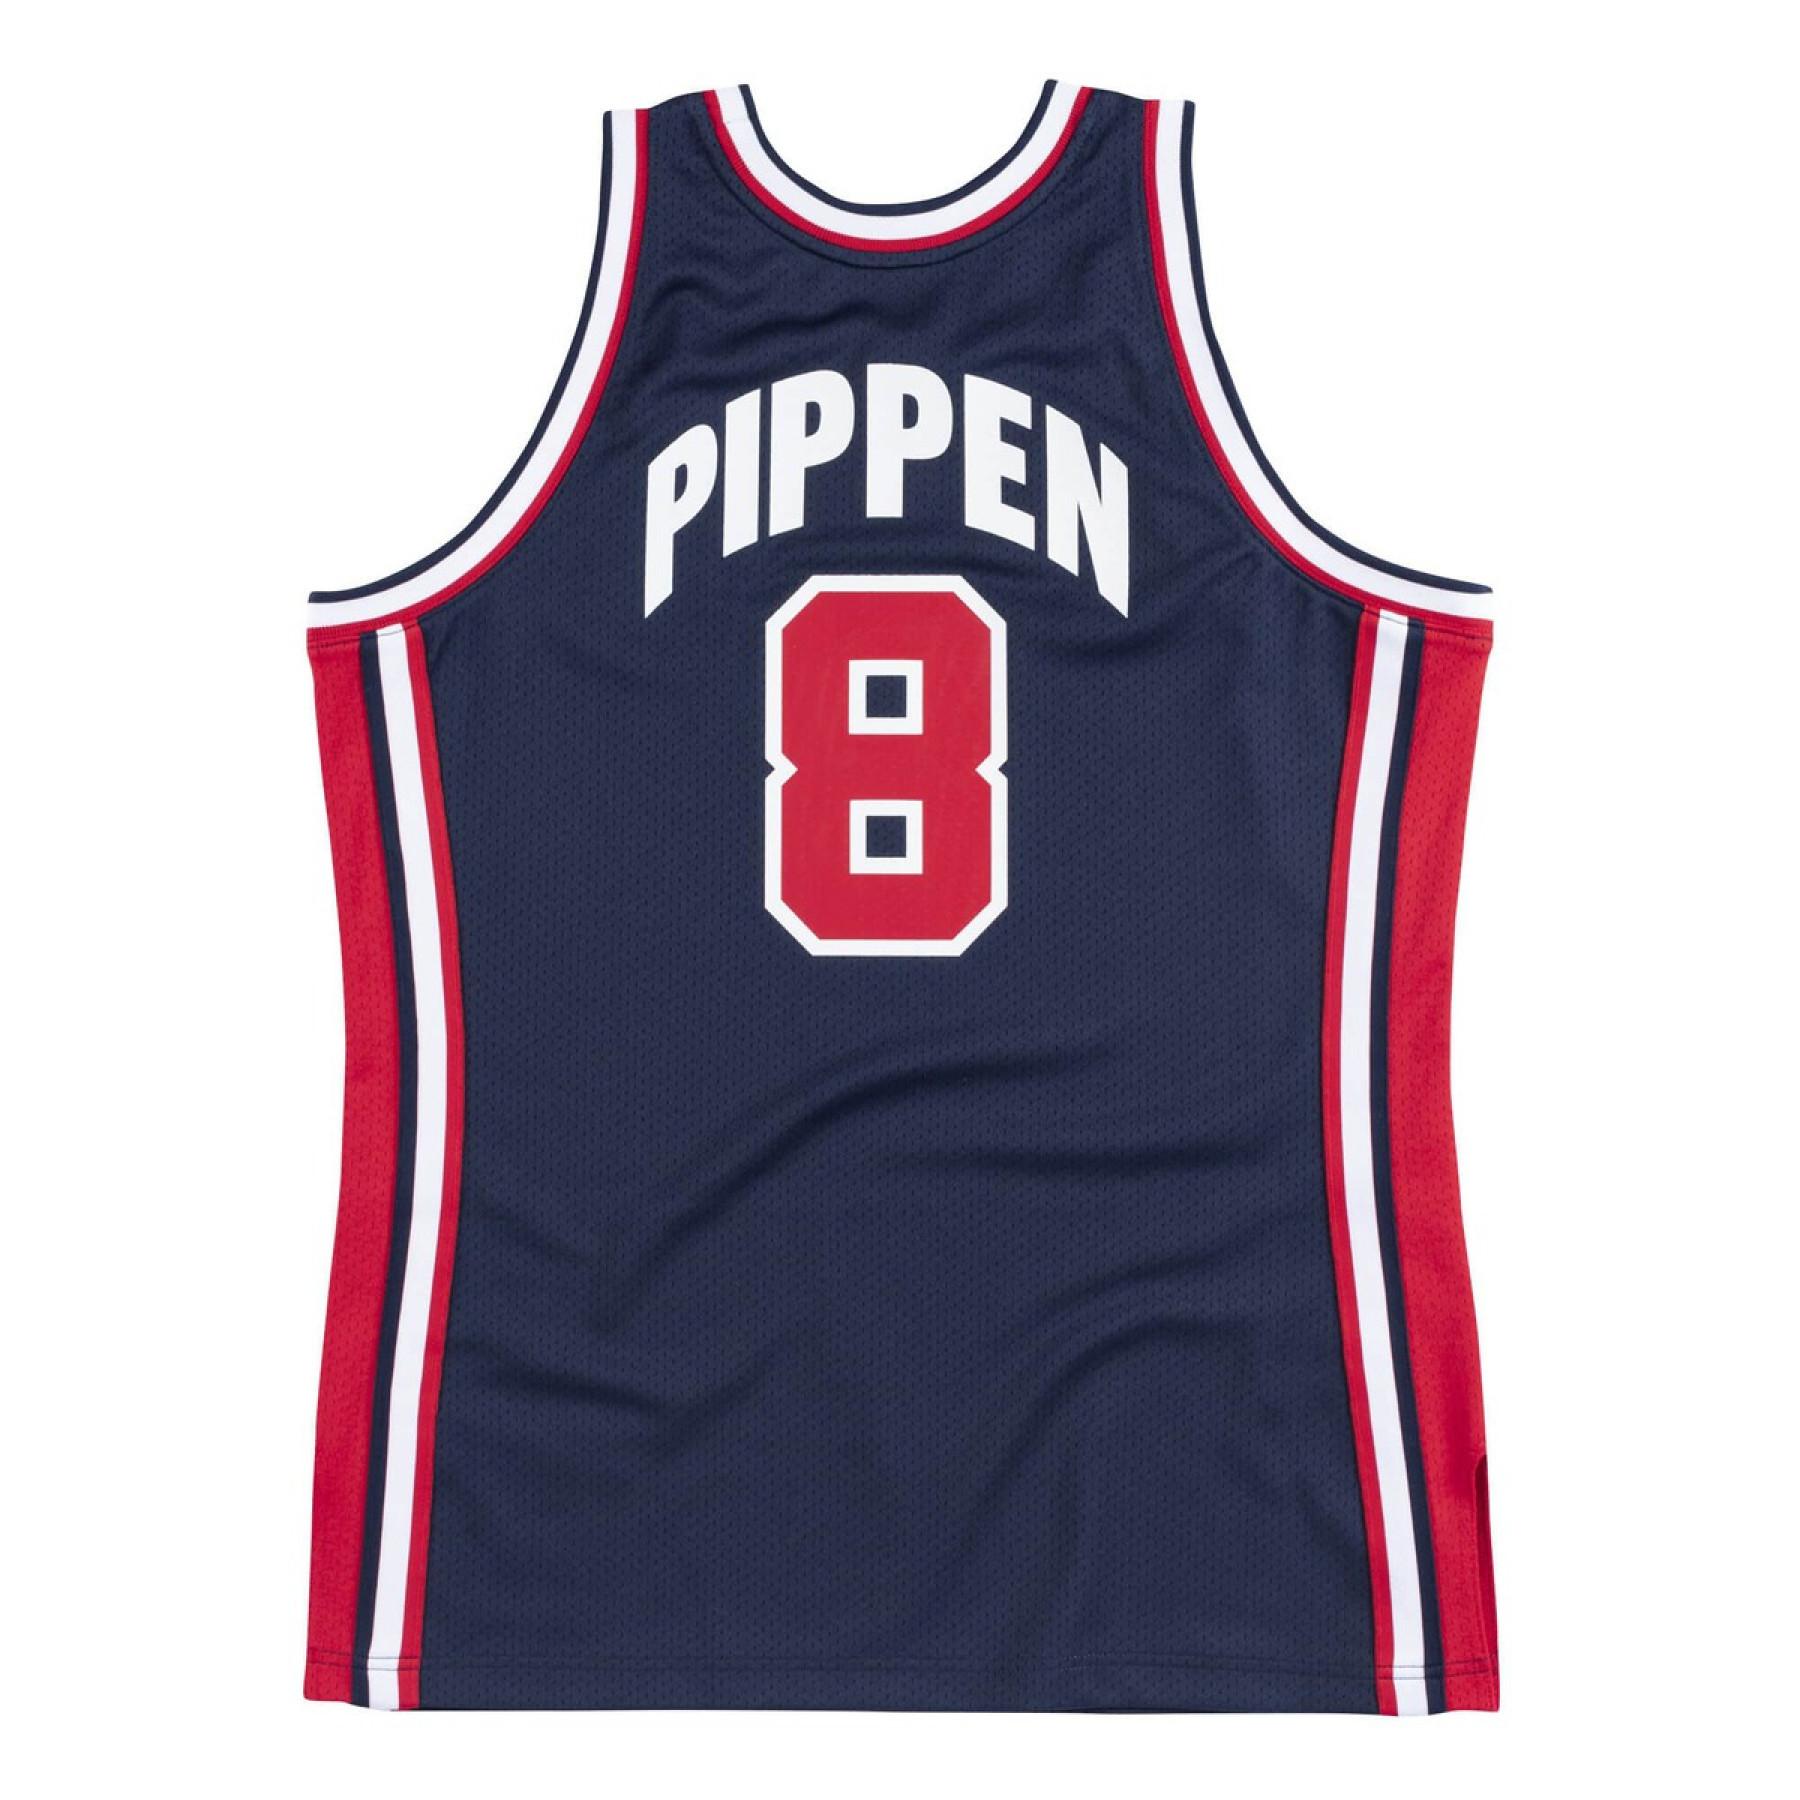 Autentyczna koszulka drużyny USA nba Scottie Pippen